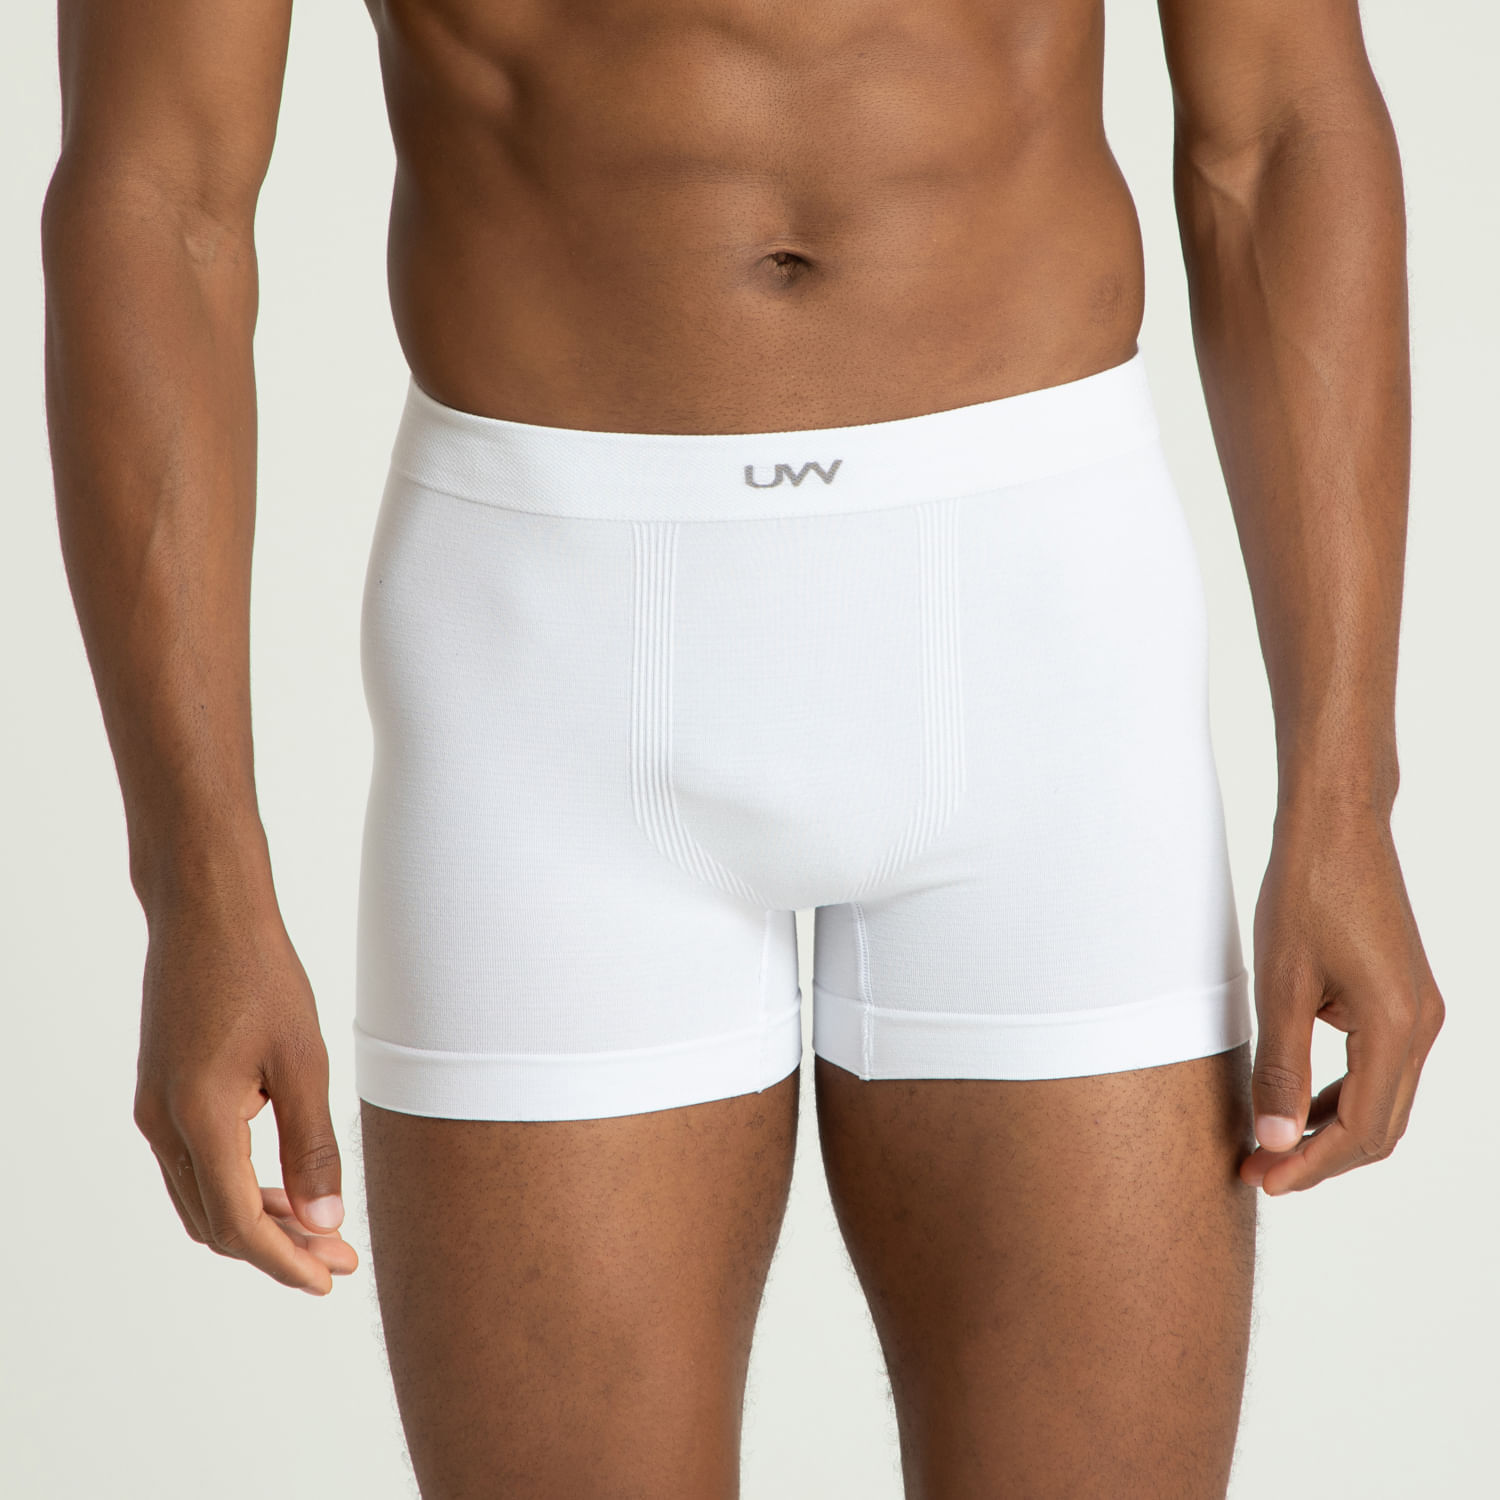 Pack 5 cuecas slip adulto 100% algodão underwear básica tradicional casual